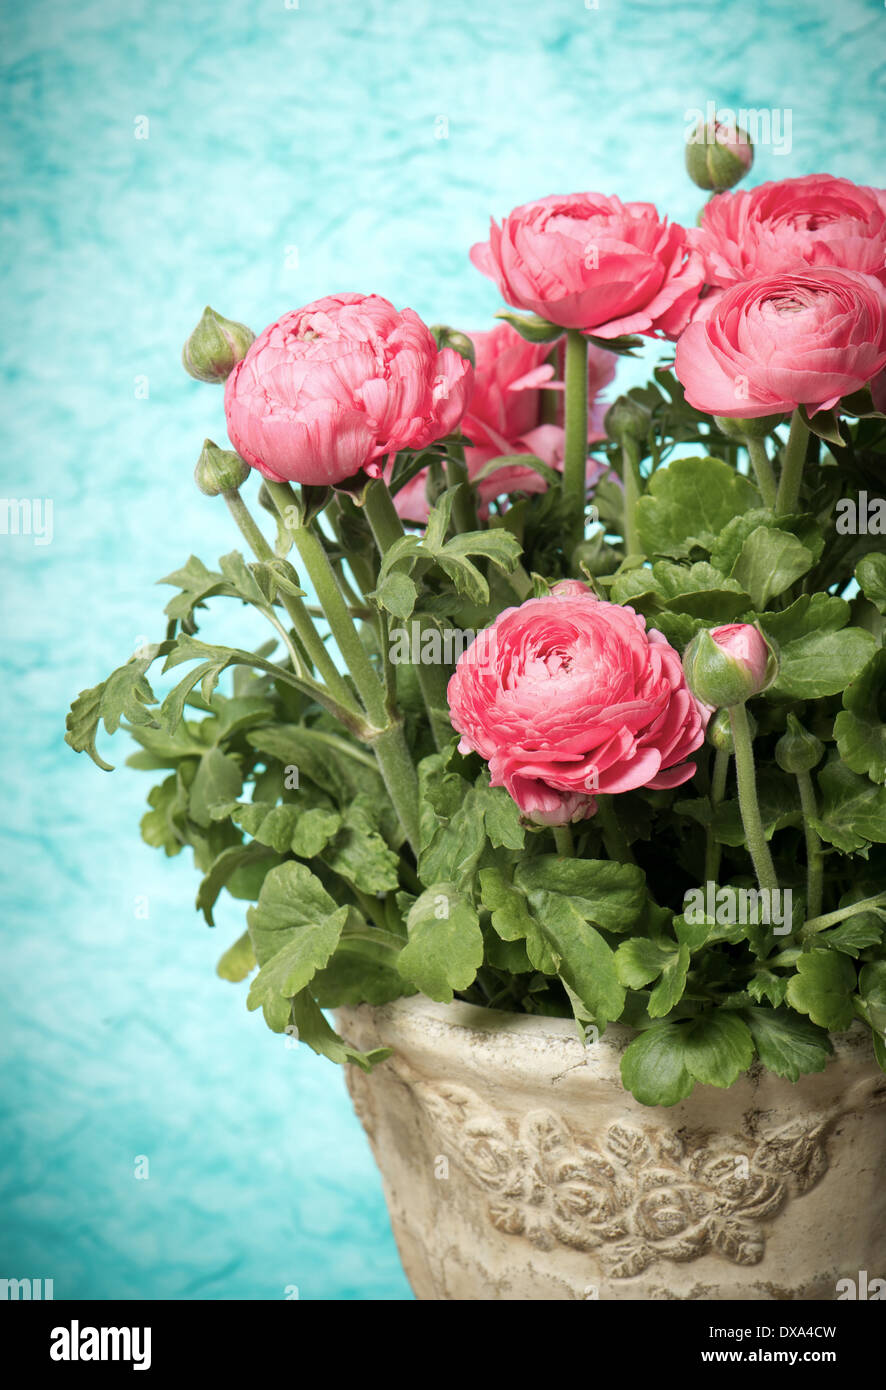 schöner Blumenstrauß Frühling Blumen rosa Ranunkeln Stockfoto